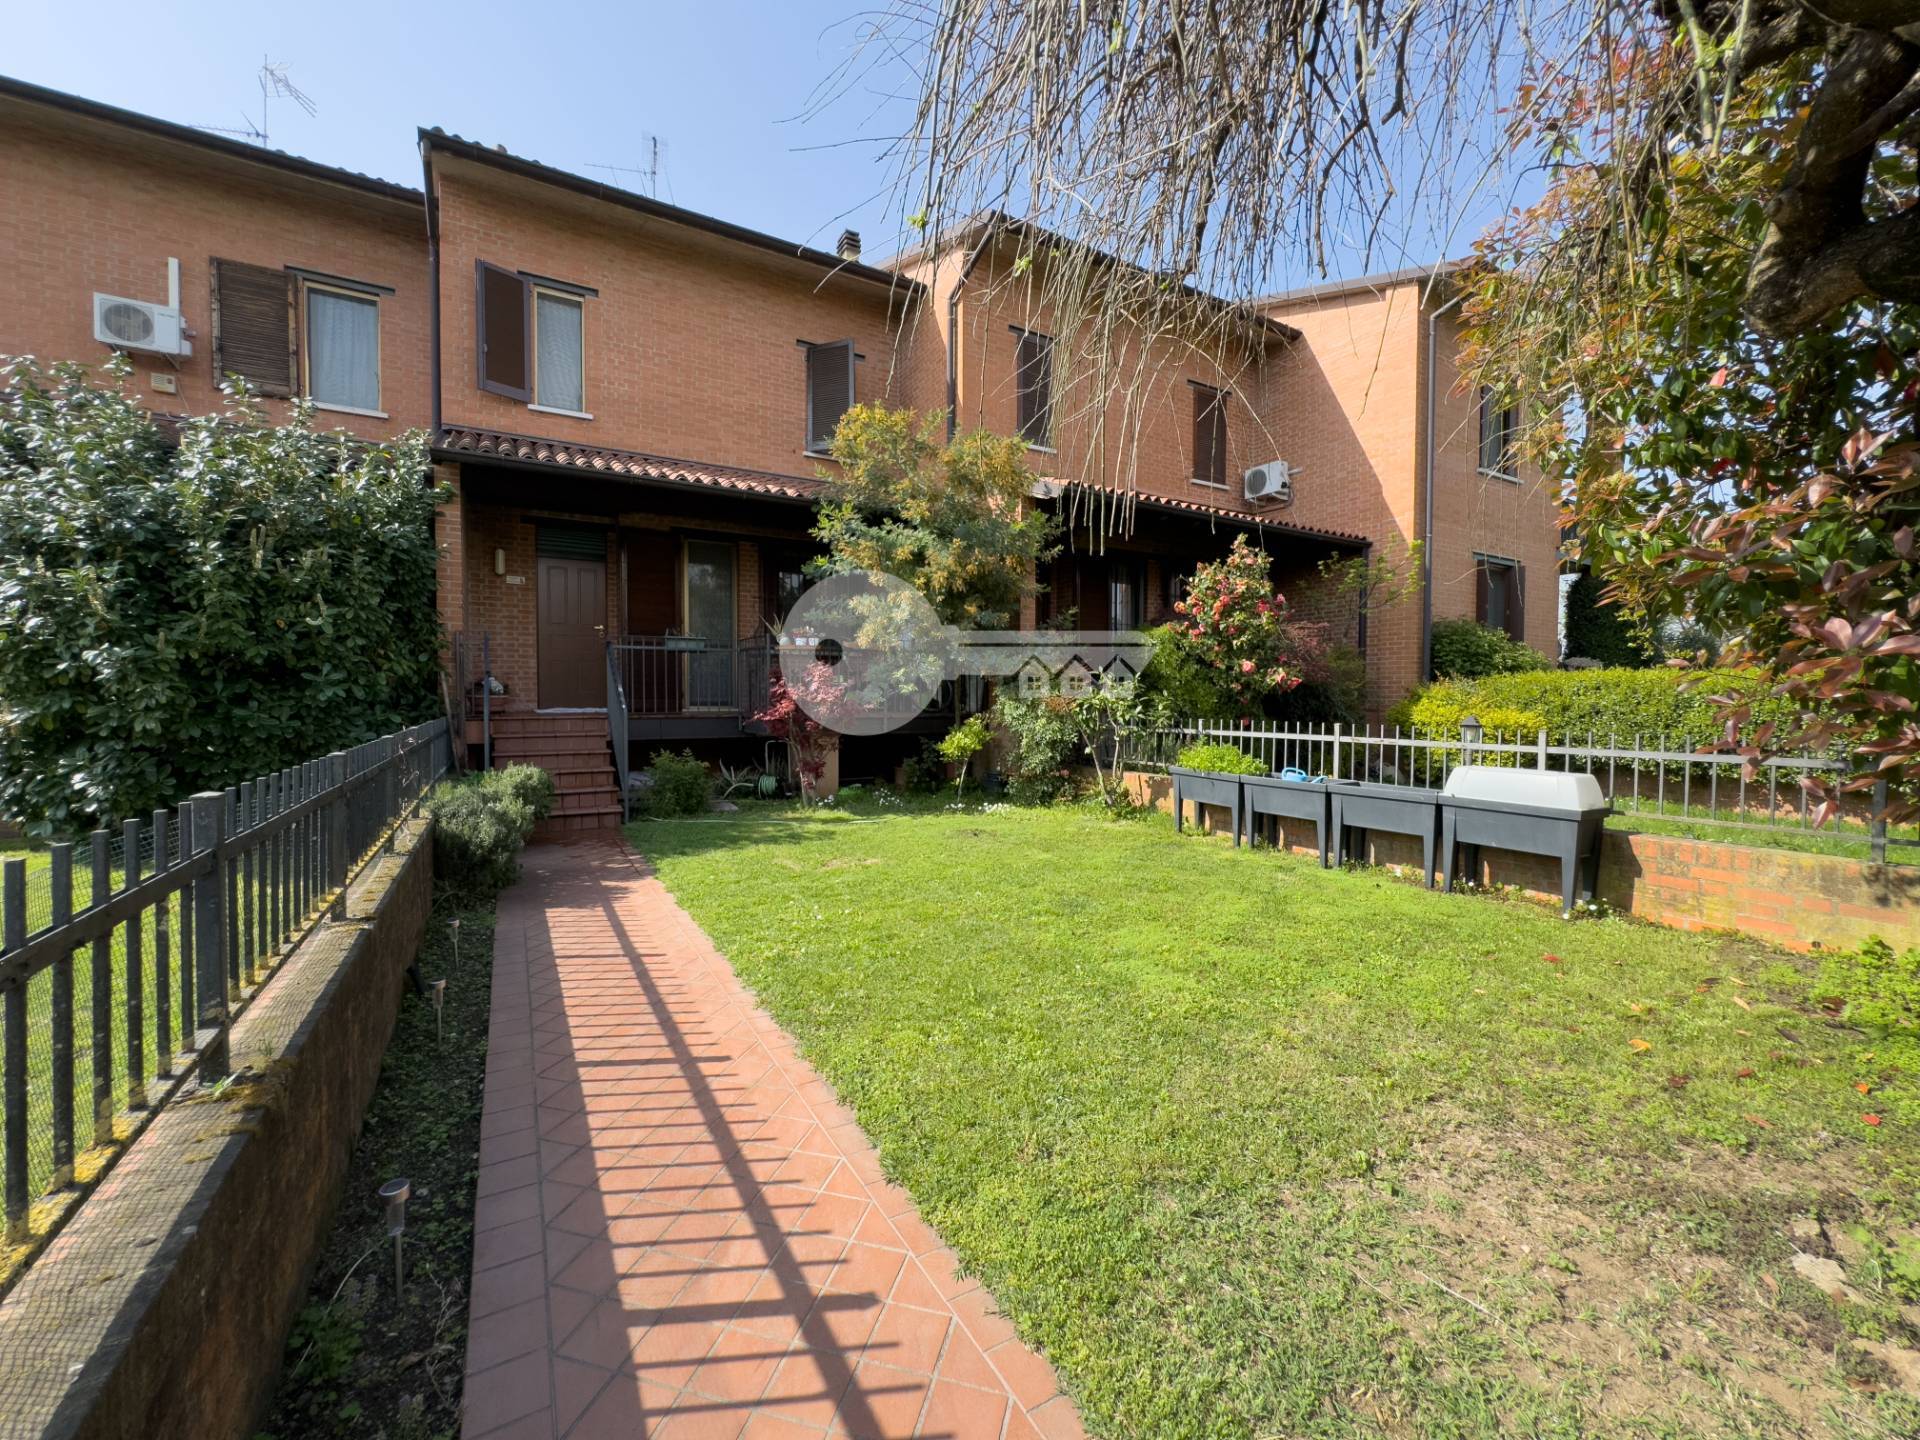 Villa a Schiera in vendita a Manerbio, 4 locali, prezzo € 185.000 | PortaleAgenzieImmobiliari.it